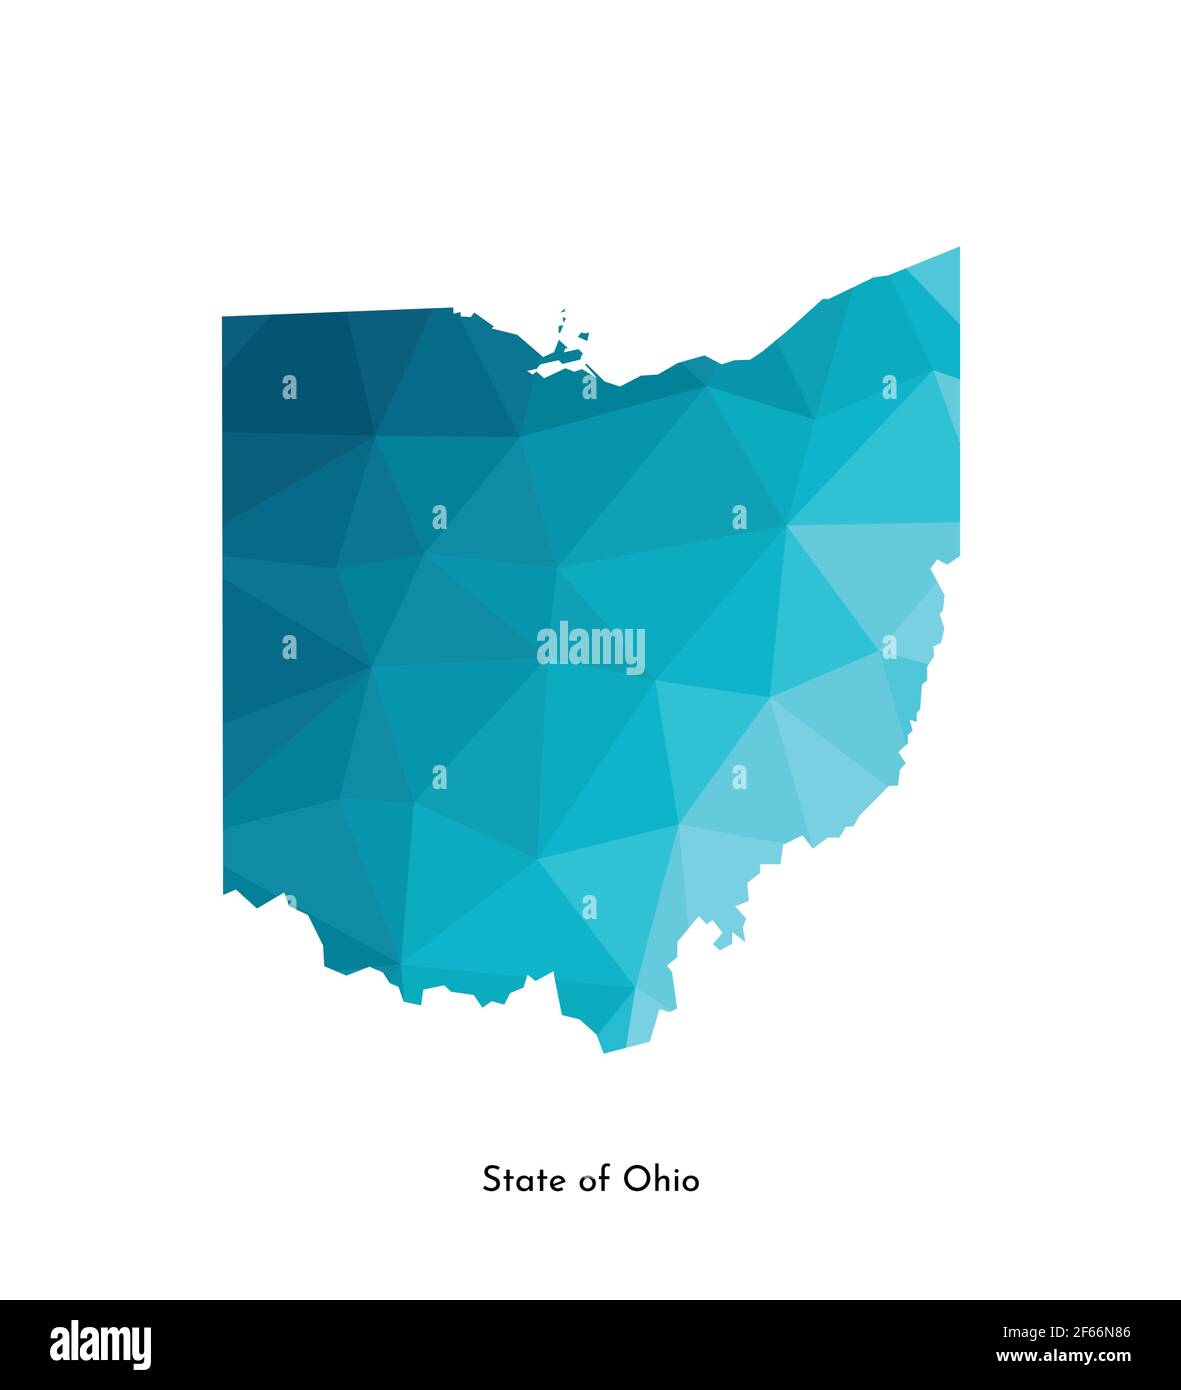 Icona di illustrazione vettoriale isolata con sagoma blu semplificata della mappa dello stato dell'Ohio (USA). Stile geometrico poligonale. Sfondo bianco. Illustrazione Vettoriale